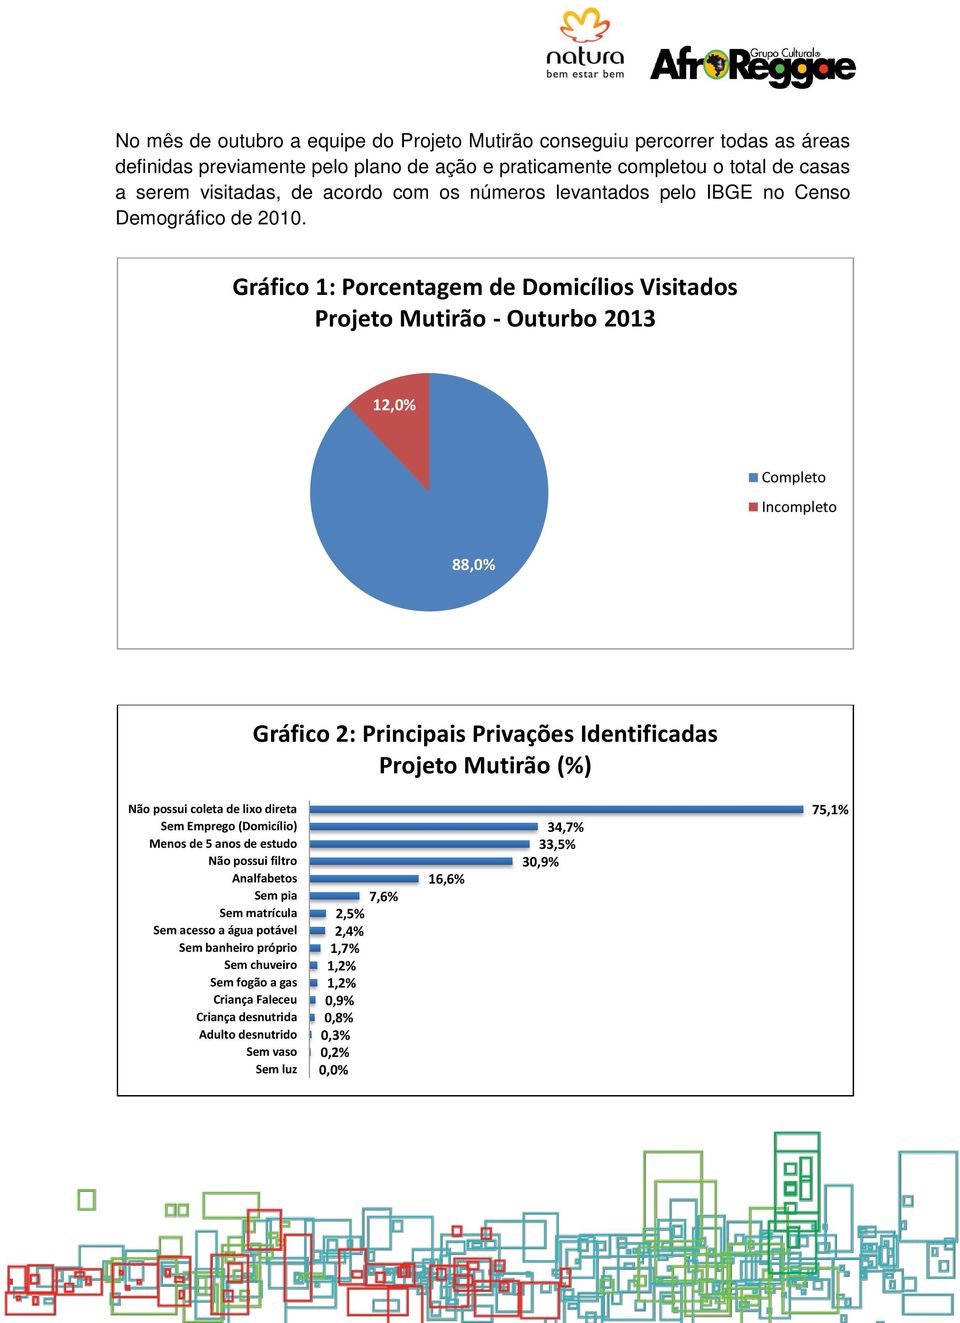 Gráfico 1: Porcentagem de Domicílios Visitados Projeto Mutirão - Outurbo 2013 12,0% Completo Incompleto 88,0% Gráfico 2: Principais Privações Identificadas Projeto Mutirão (%) Não possui coleta de